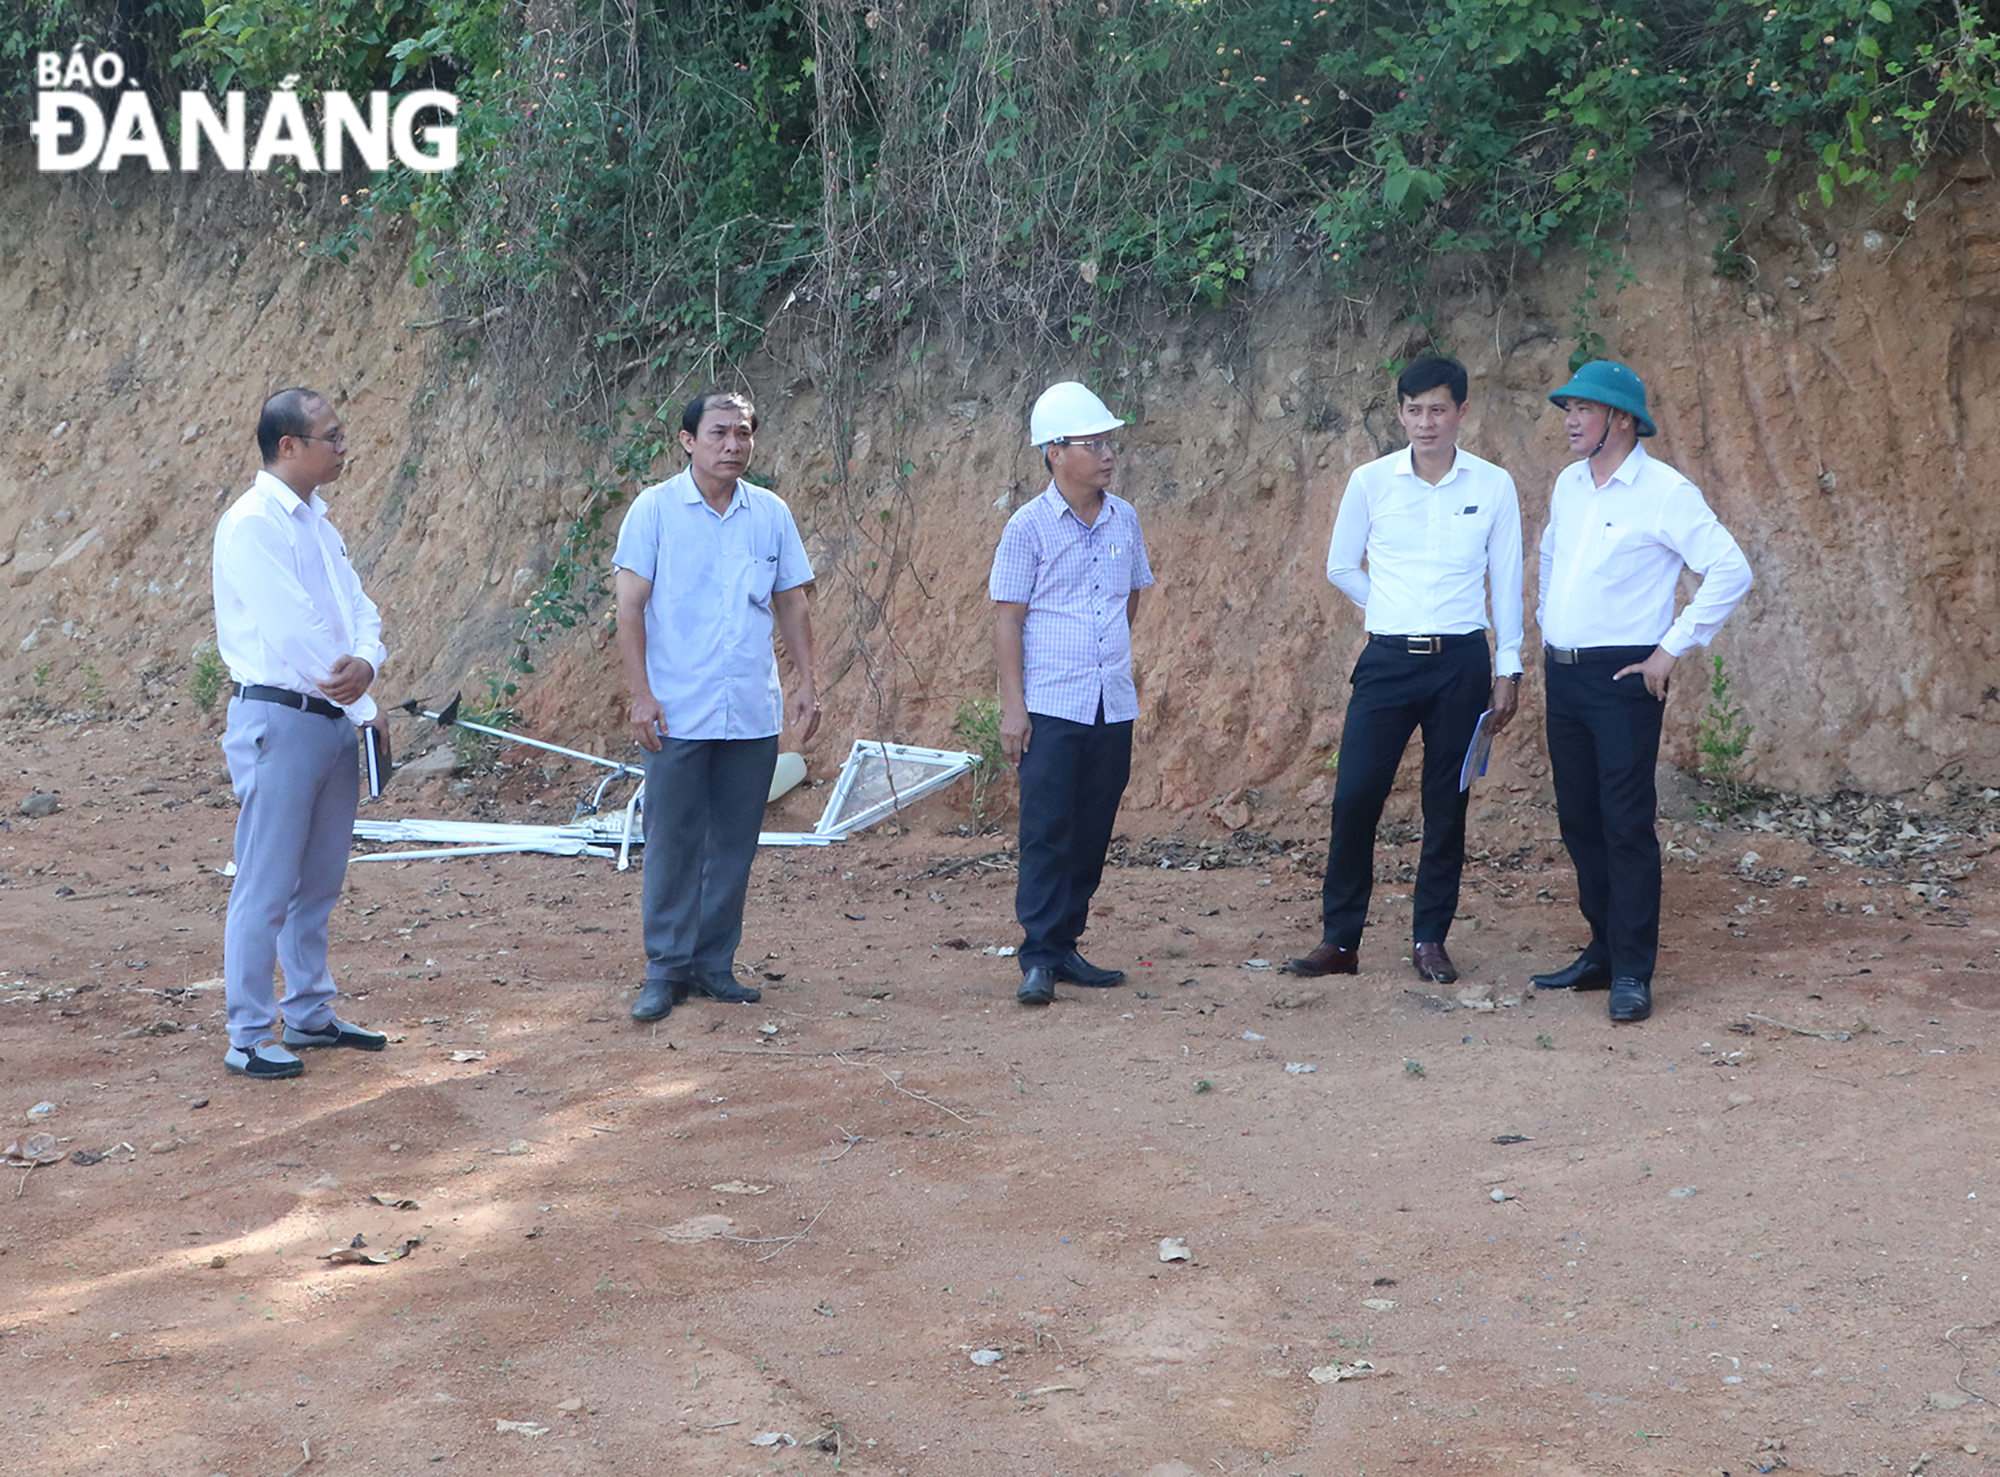 Phó Chủ tịch UBND quận Liên Chiểu Trần Công Nguyên cùng đoàn kiểm tra tiến hành kiểm tra thực tế tại khu vực đất rừng bị san gạt trong chiều 23-8. Ảnh: VĂN HOÀNG